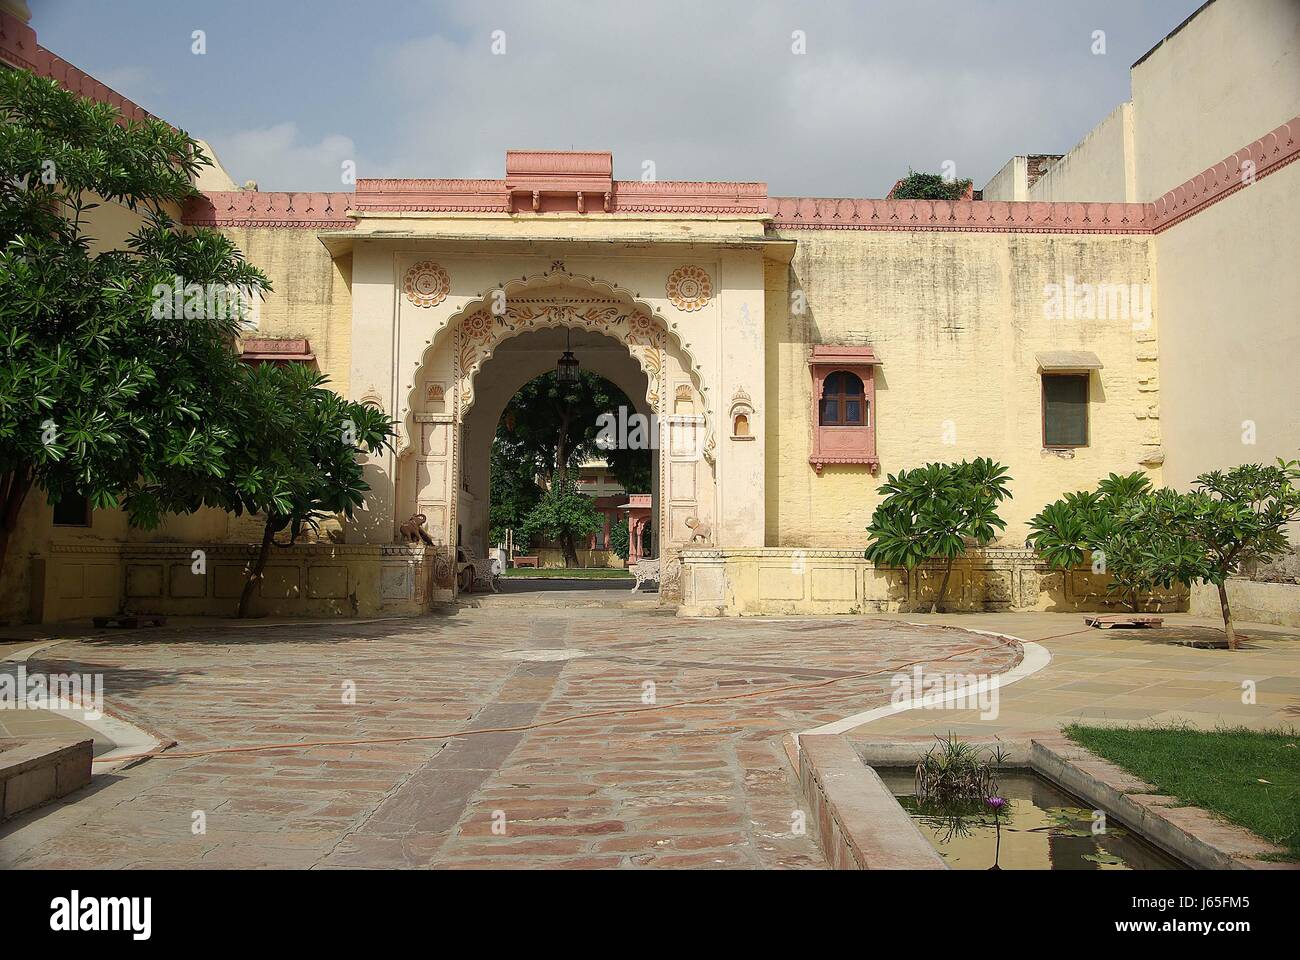 Costruzione casa asia india obiettivo passaggio archgway porta ingresso del gantry in stile cortile Foto Stock